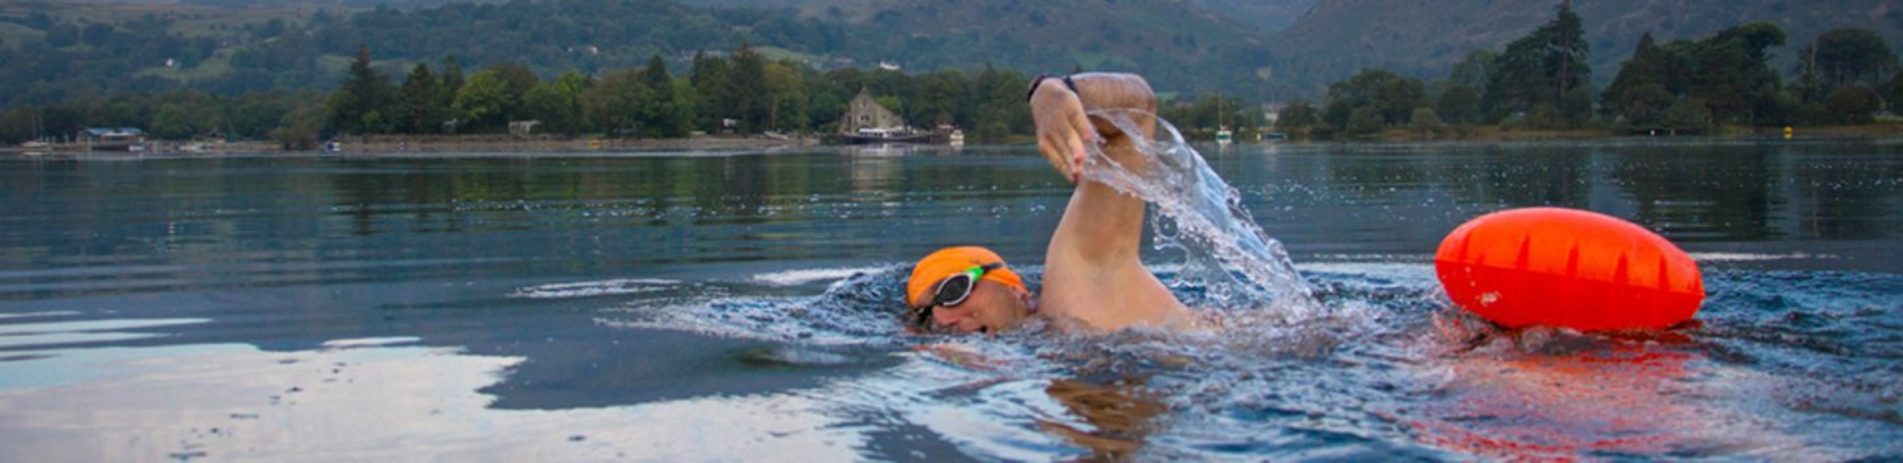 lone-open-water-swimmer-in-loch-tree-background